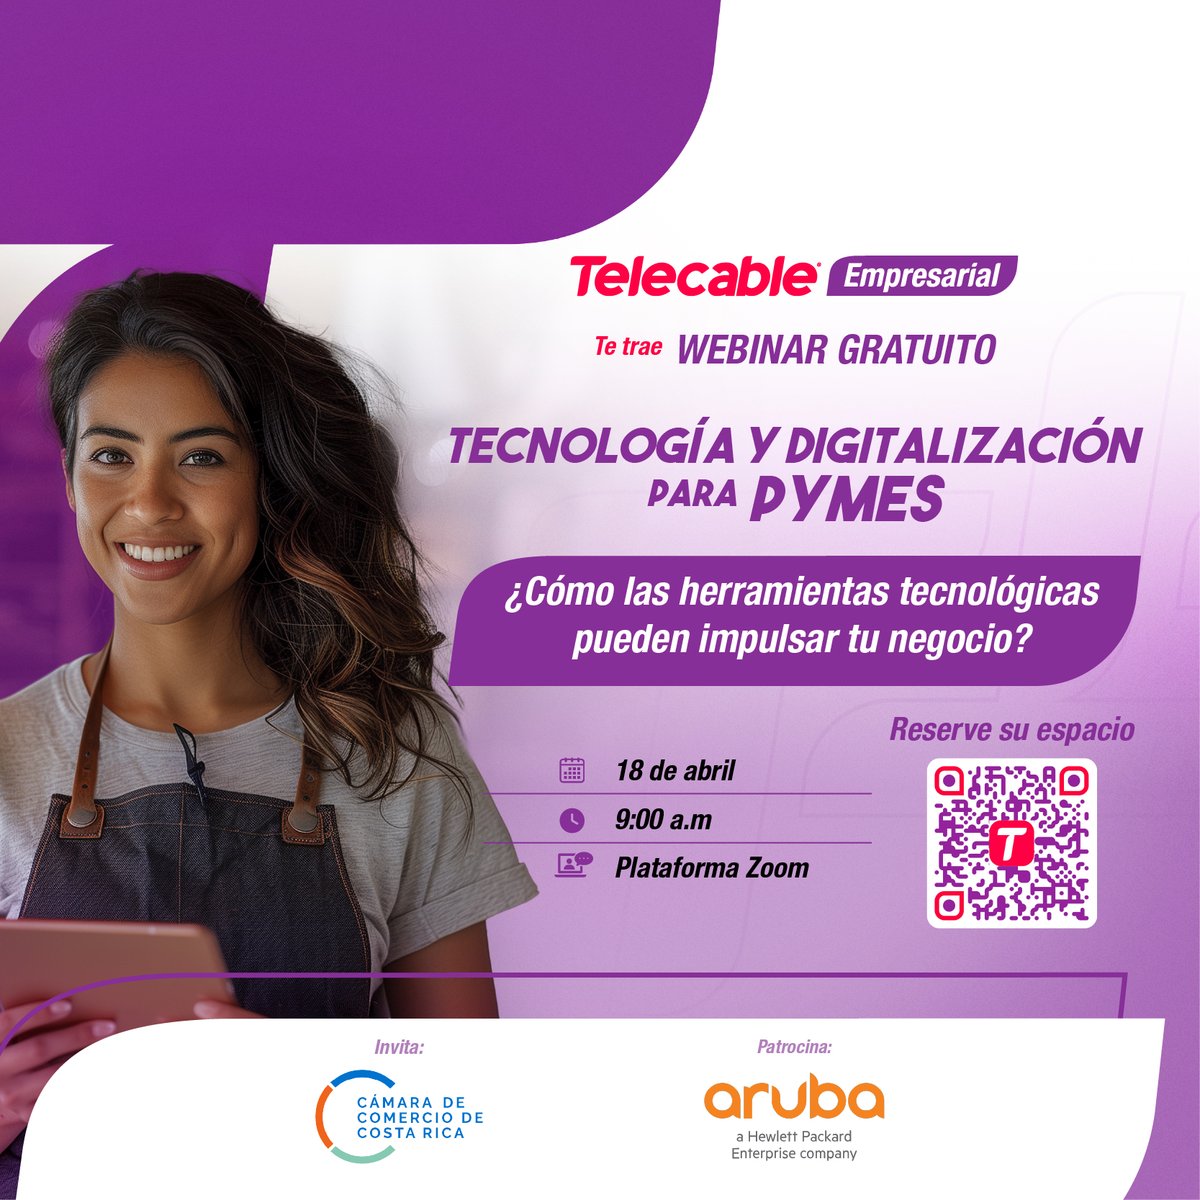 Telecable Empresarial y la Cámara de Comercio de Costa Rica, le invitan a participar en nuestro evento virtual gratuito Tecnología y digitalización para PYMES, este 18 de abril a las 9:00 a.m. Inscríbase aquí 👉🏼 bit.ly/3U28KYJ